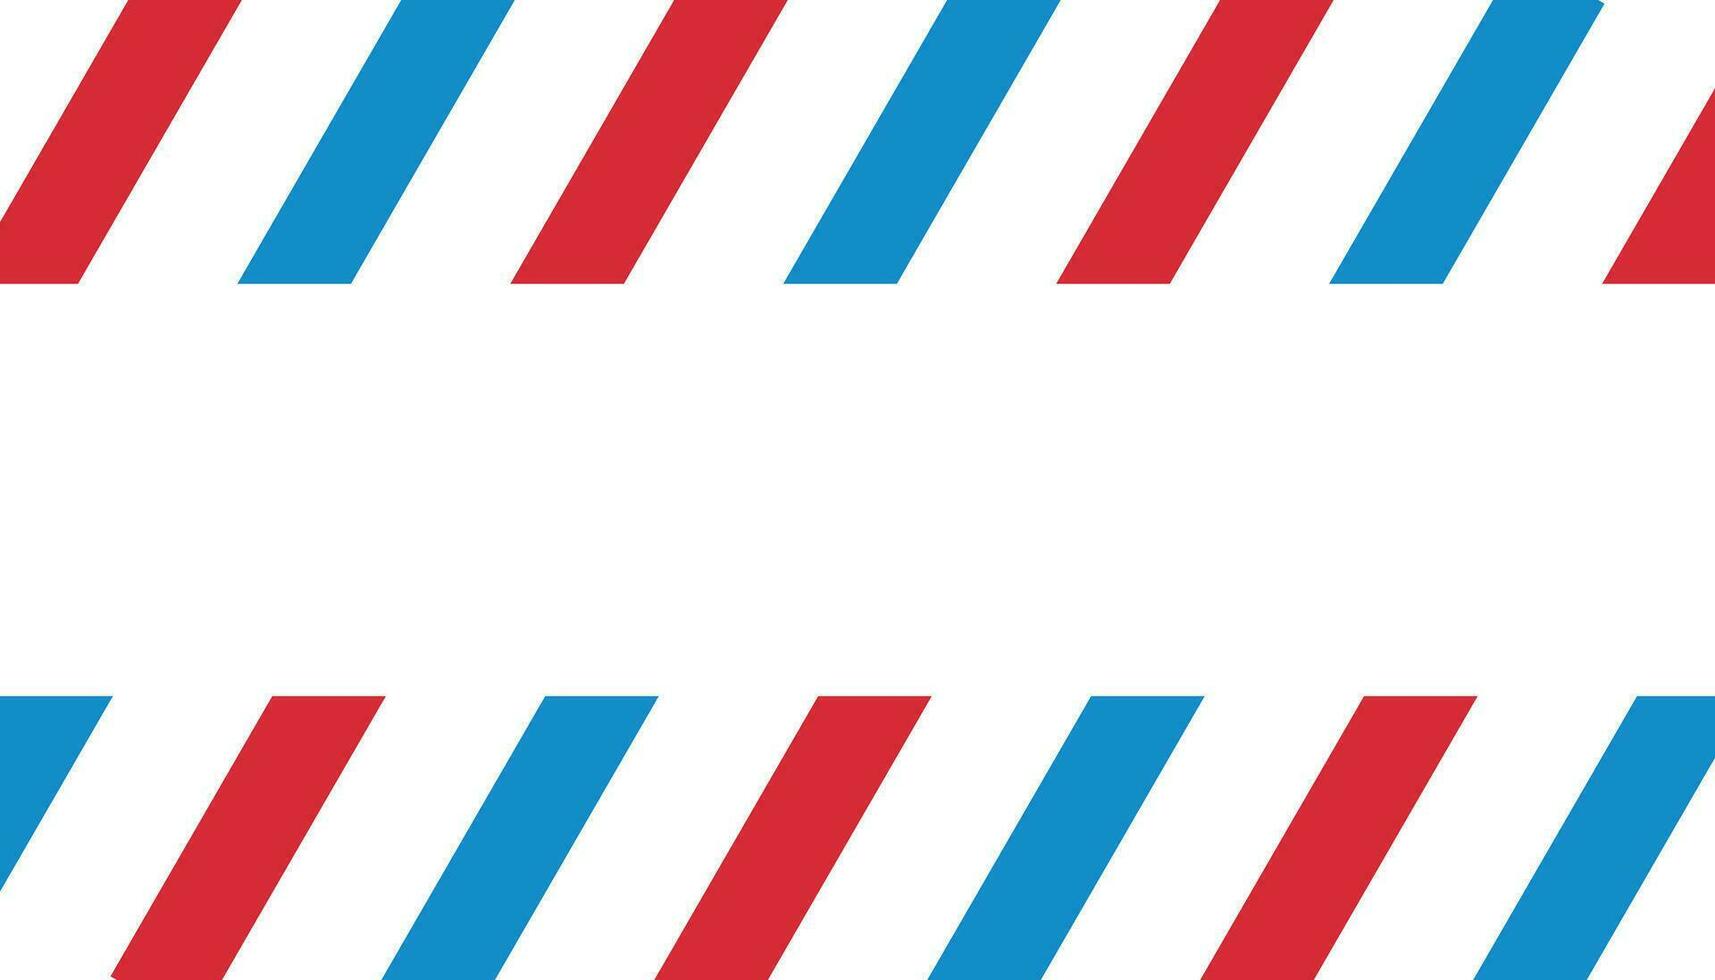 rood, blauw, wit diagonaal strepen patroon van links naar Rechtsaf vector illustratie.